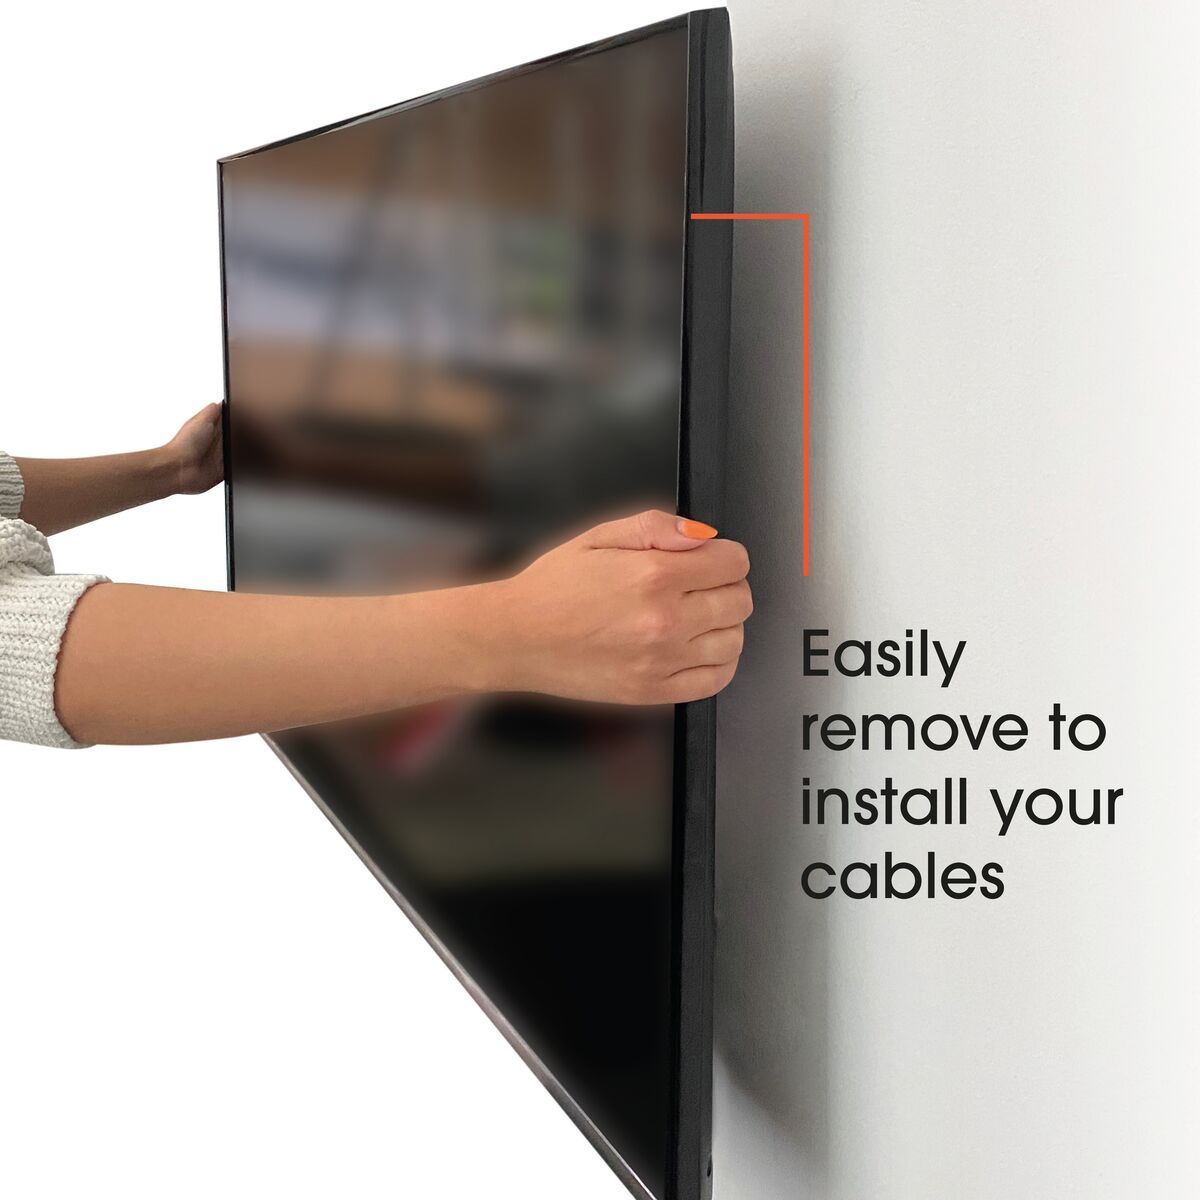 Vogel's MA2010 Neigbare TV-Wandhalterung - Geeignet für Fernseher von 19 bis 43 Zoll und einem Gewicht bis zu Bis zu 15° neigbar - USP